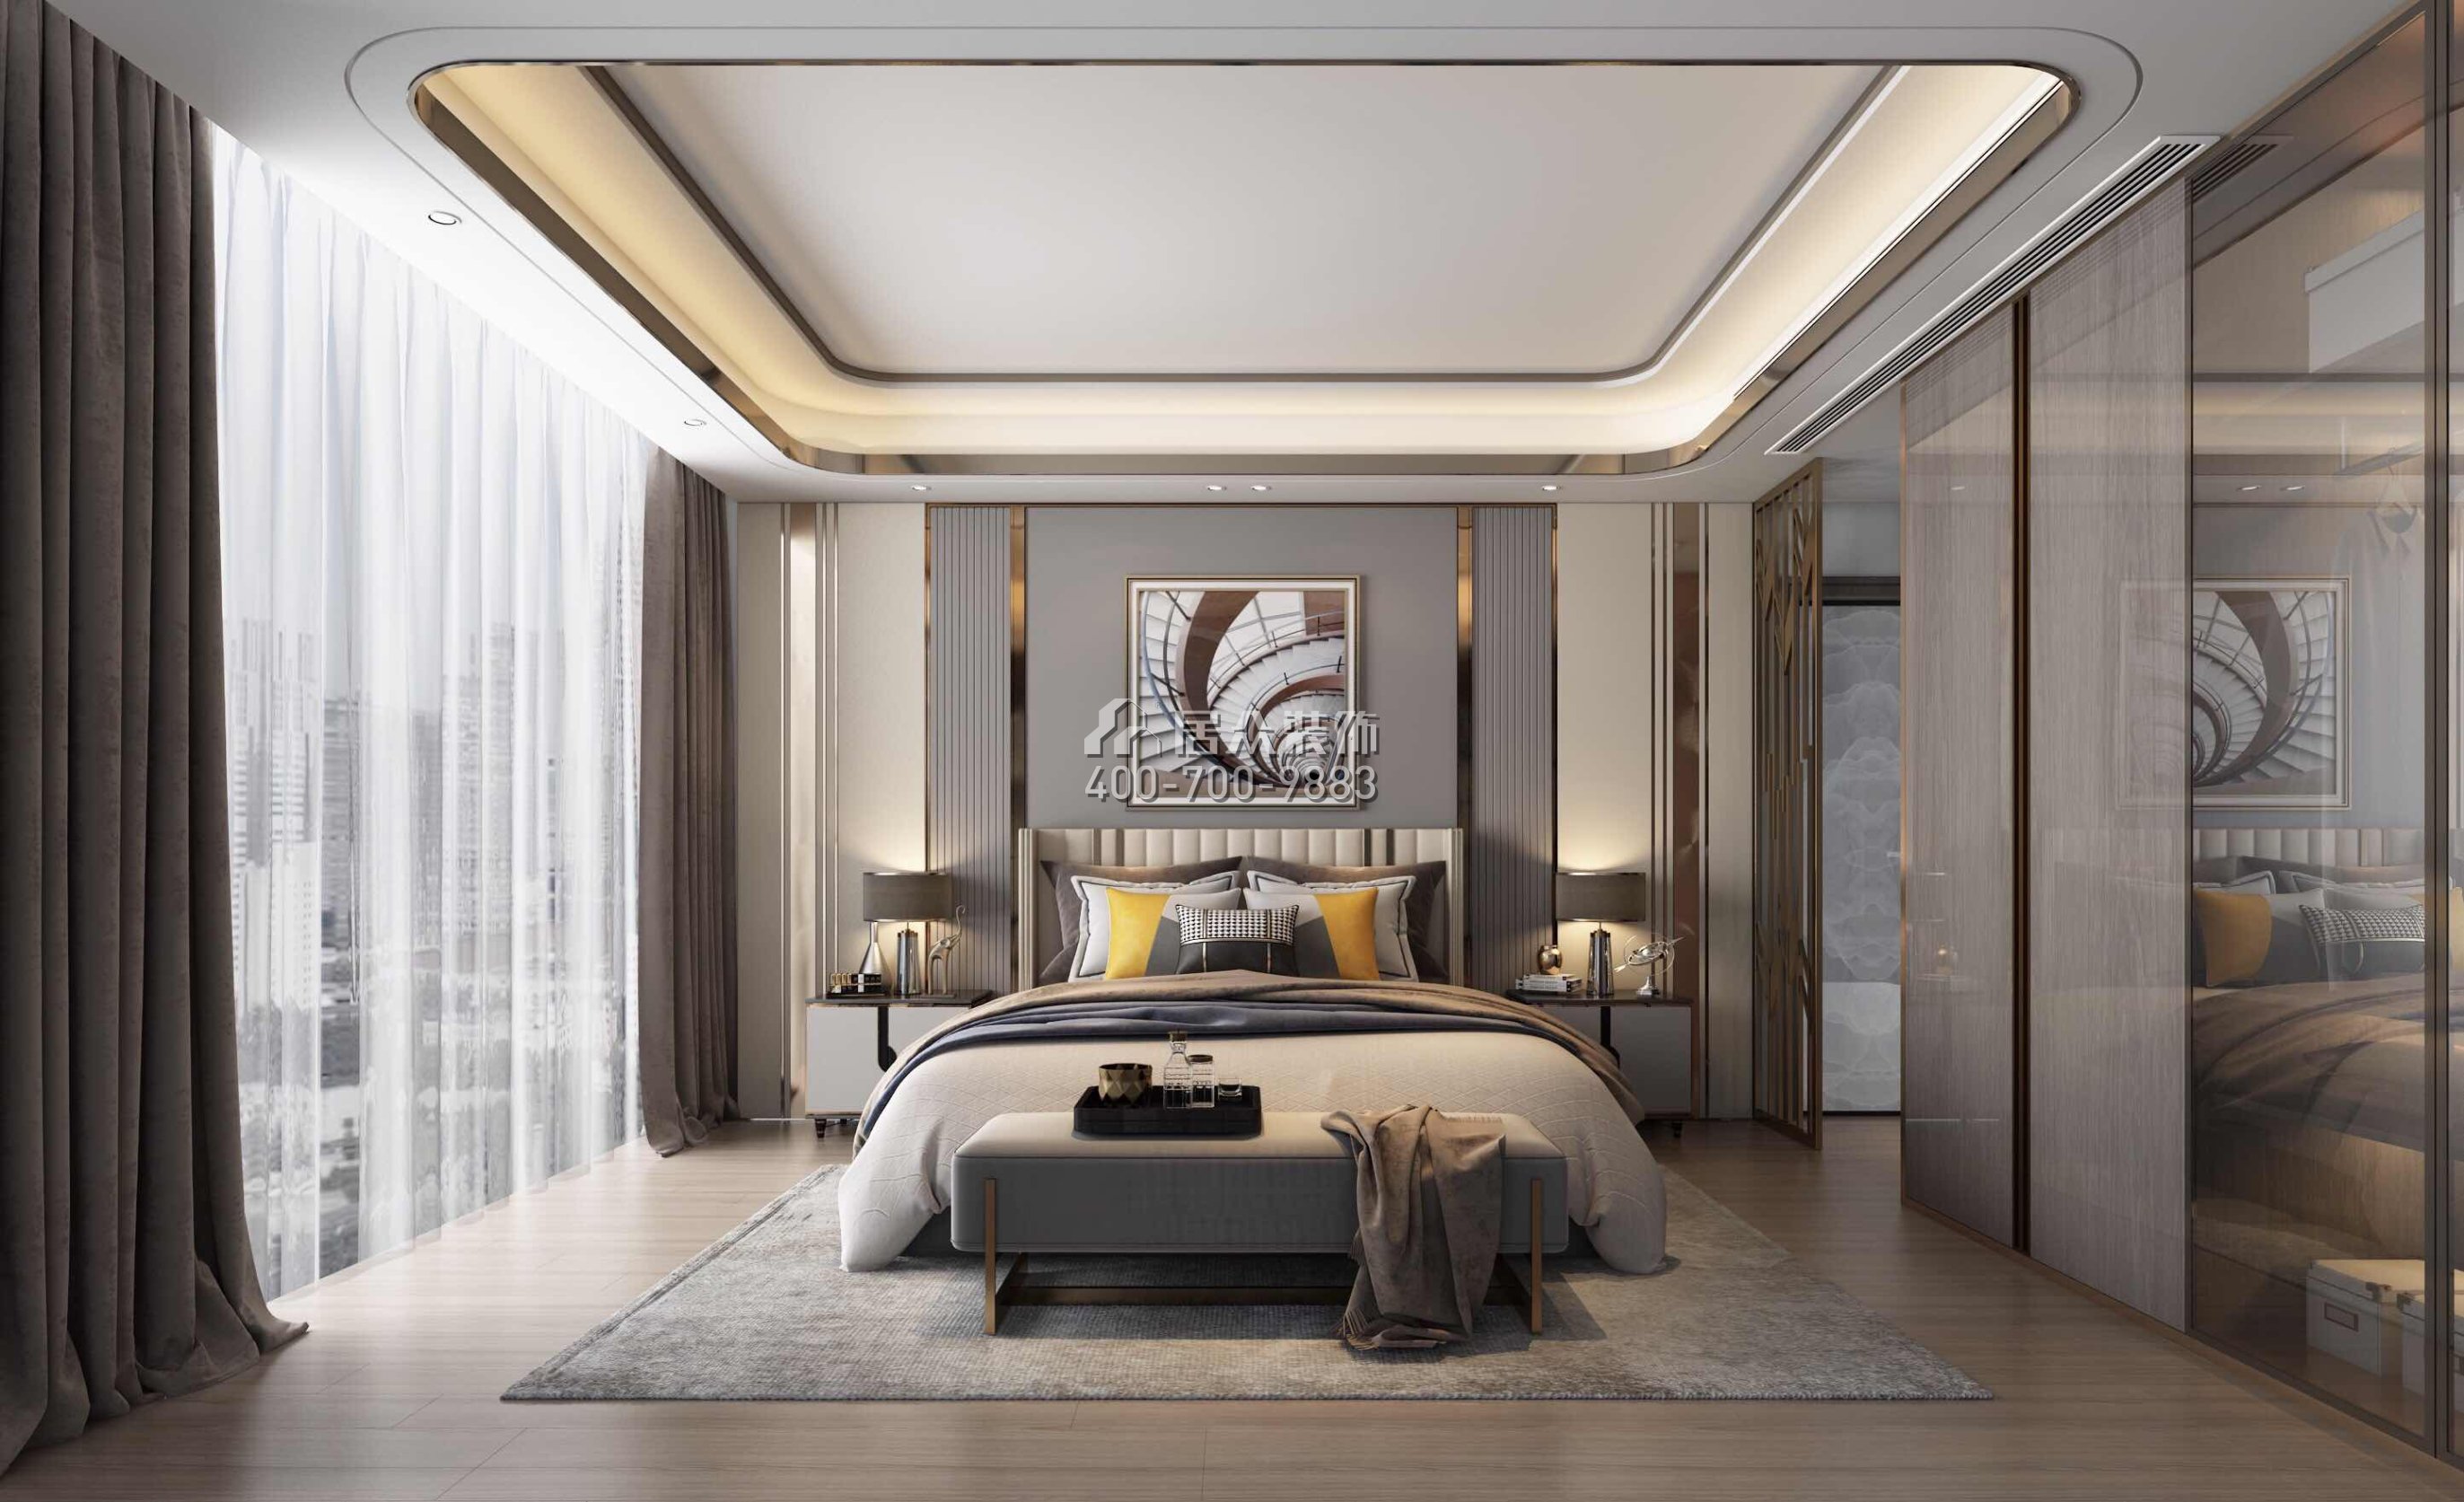 万科金域蓝湾160平方米中式风格平层户型卧室装修效果图